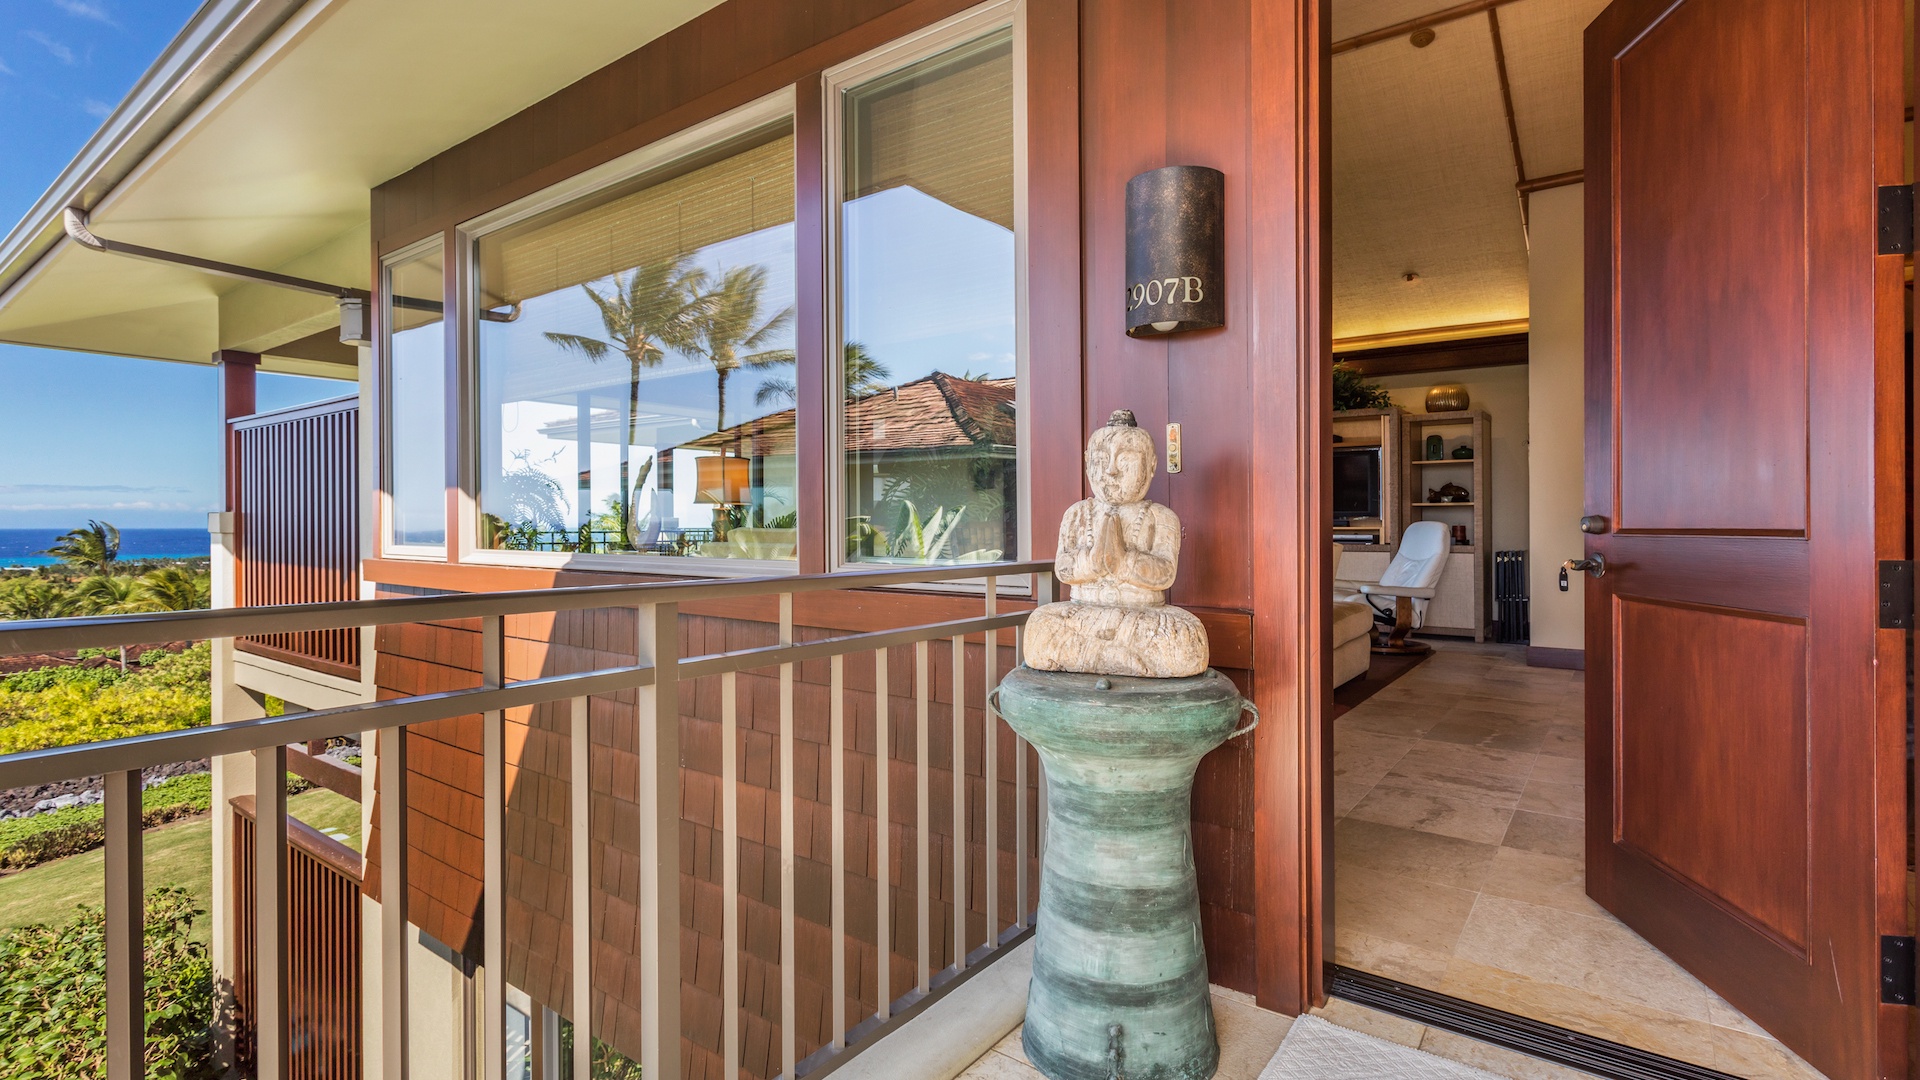 Kailua Kona Vacation Rentals, 2BD Hainoa Villa (2907B) at Four Seasons Resort at Hualalai - Villa Entryway.